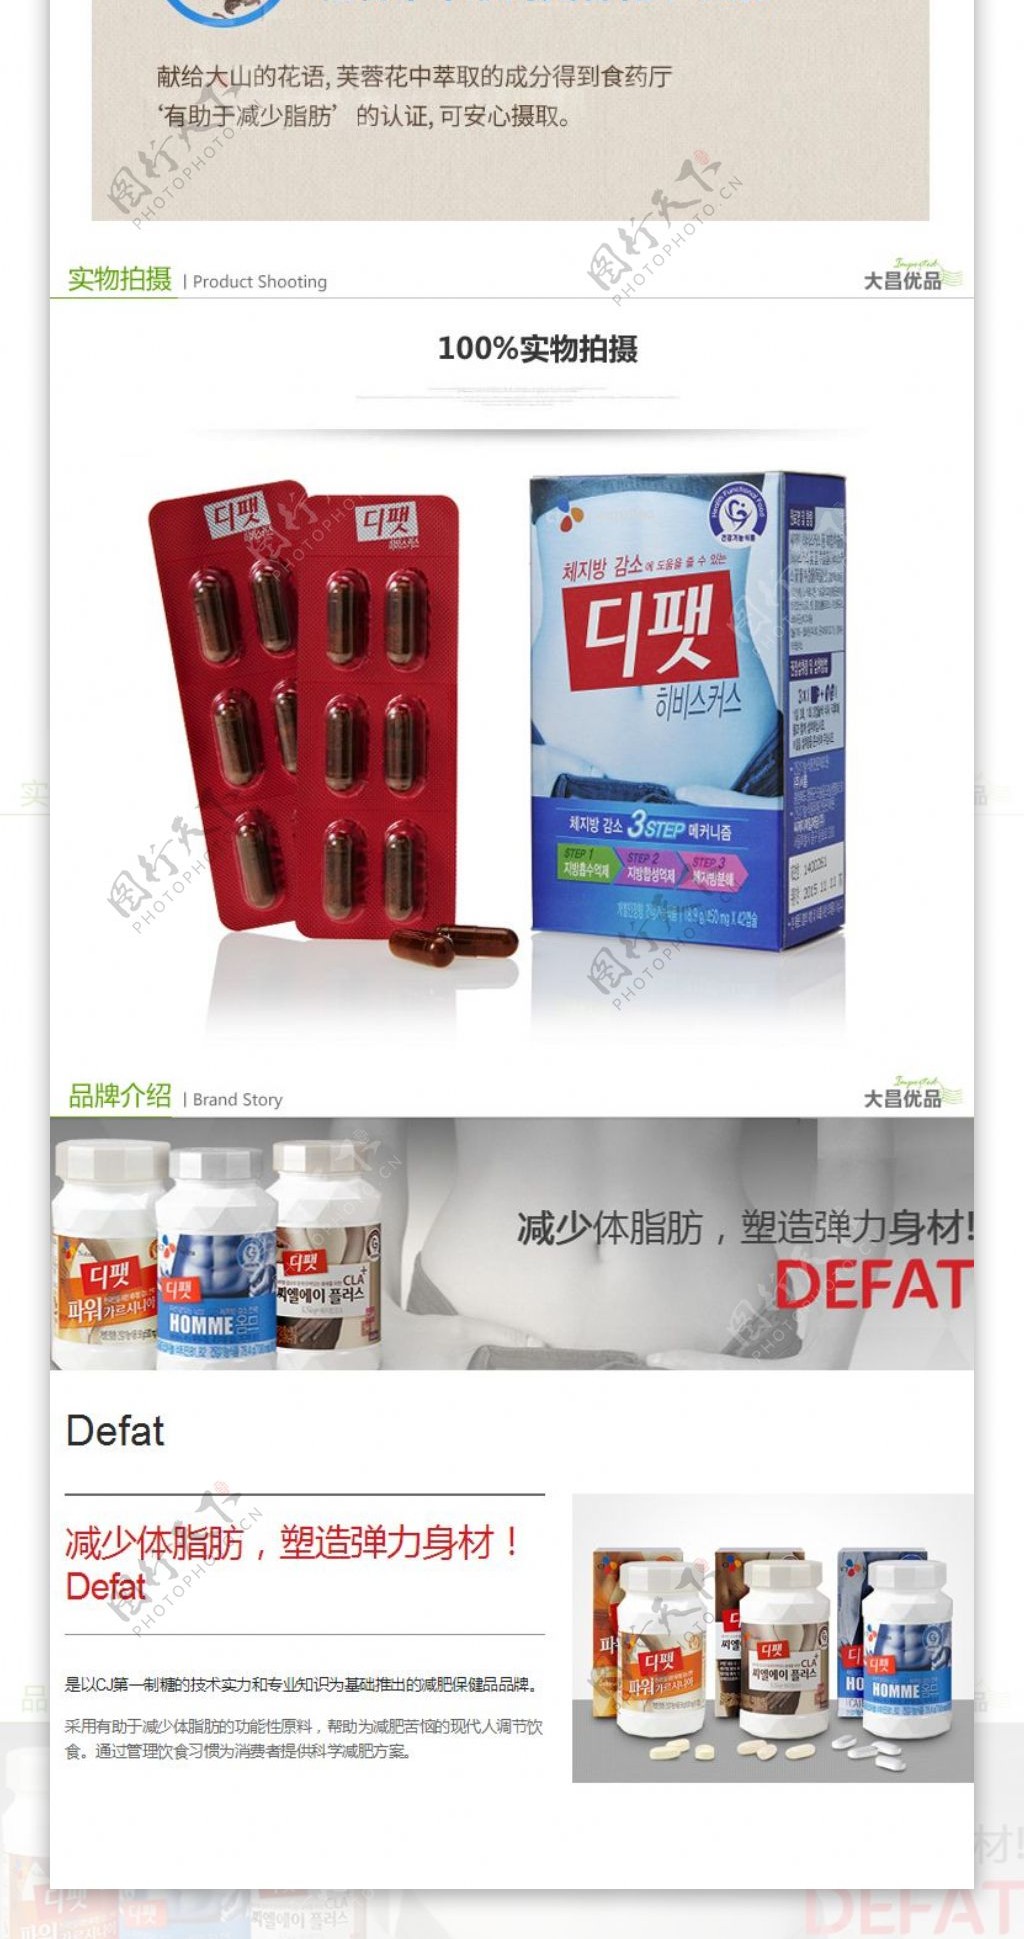 韩国希杰强效减肥胶囊详情页设计